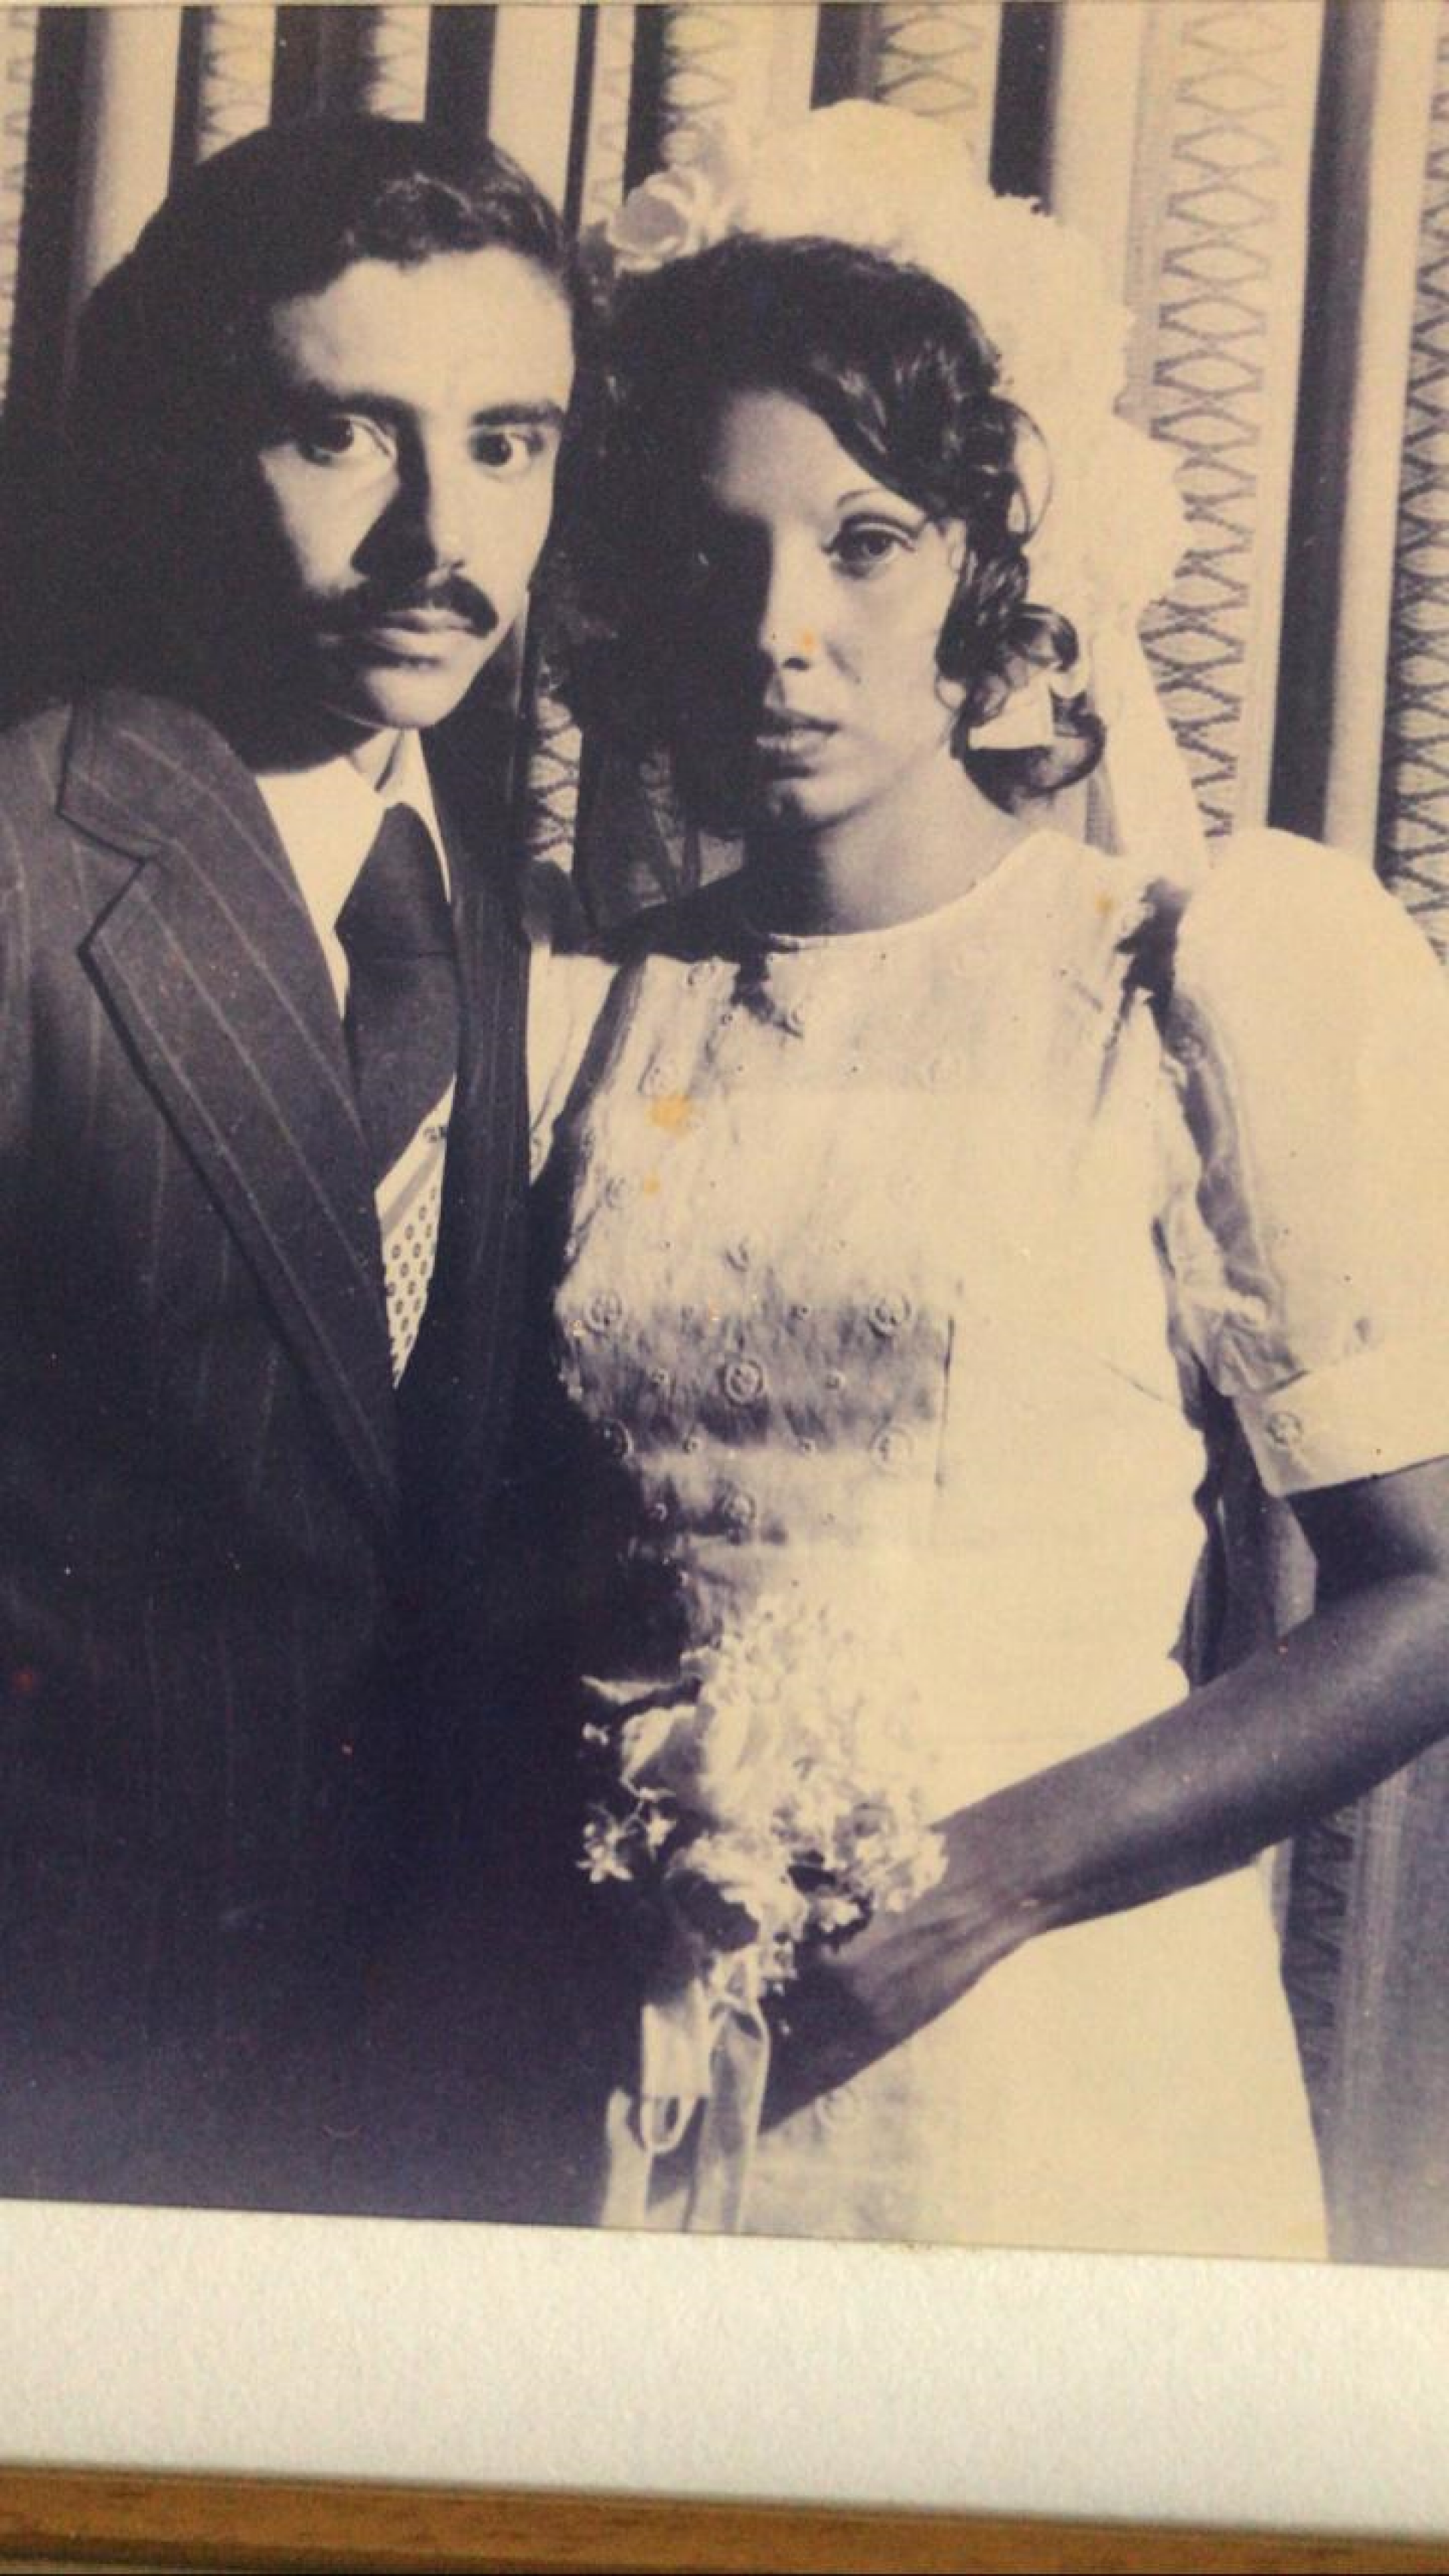 Jose Luiz Reis Mendes da Cunha, 24, and his wife Marilia Castello Branco Mendes da Cunha, 23. 